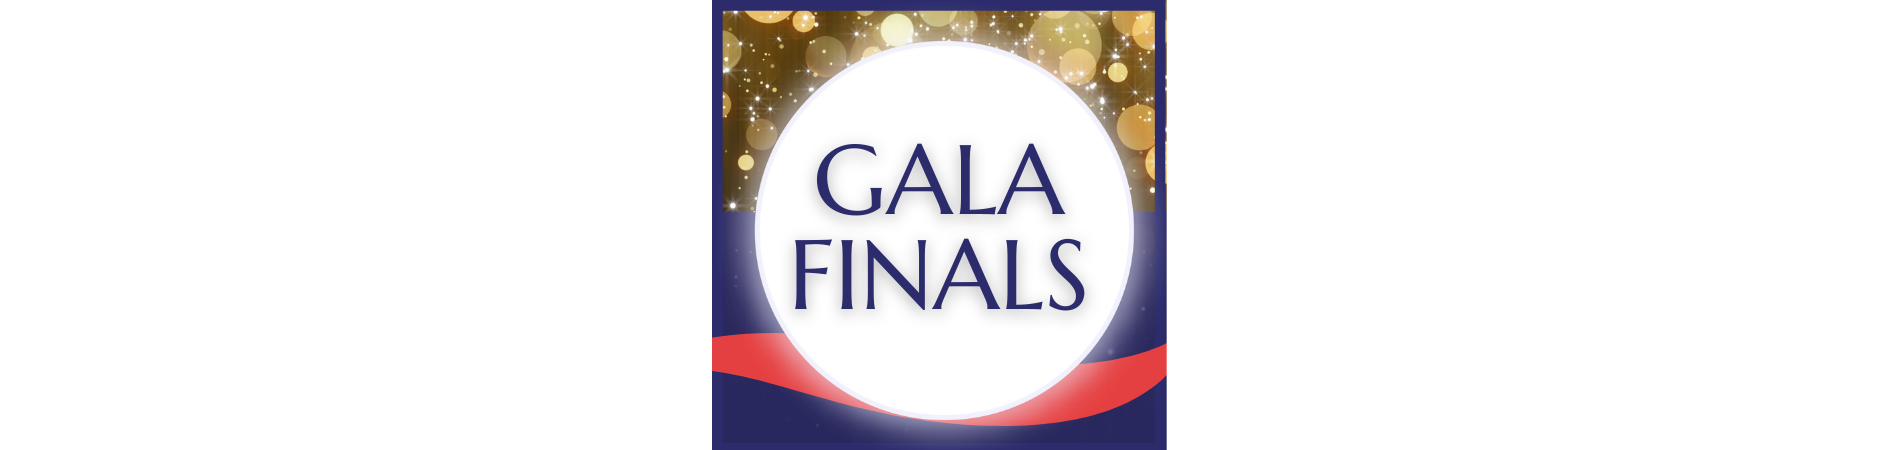 Gala Finals banner